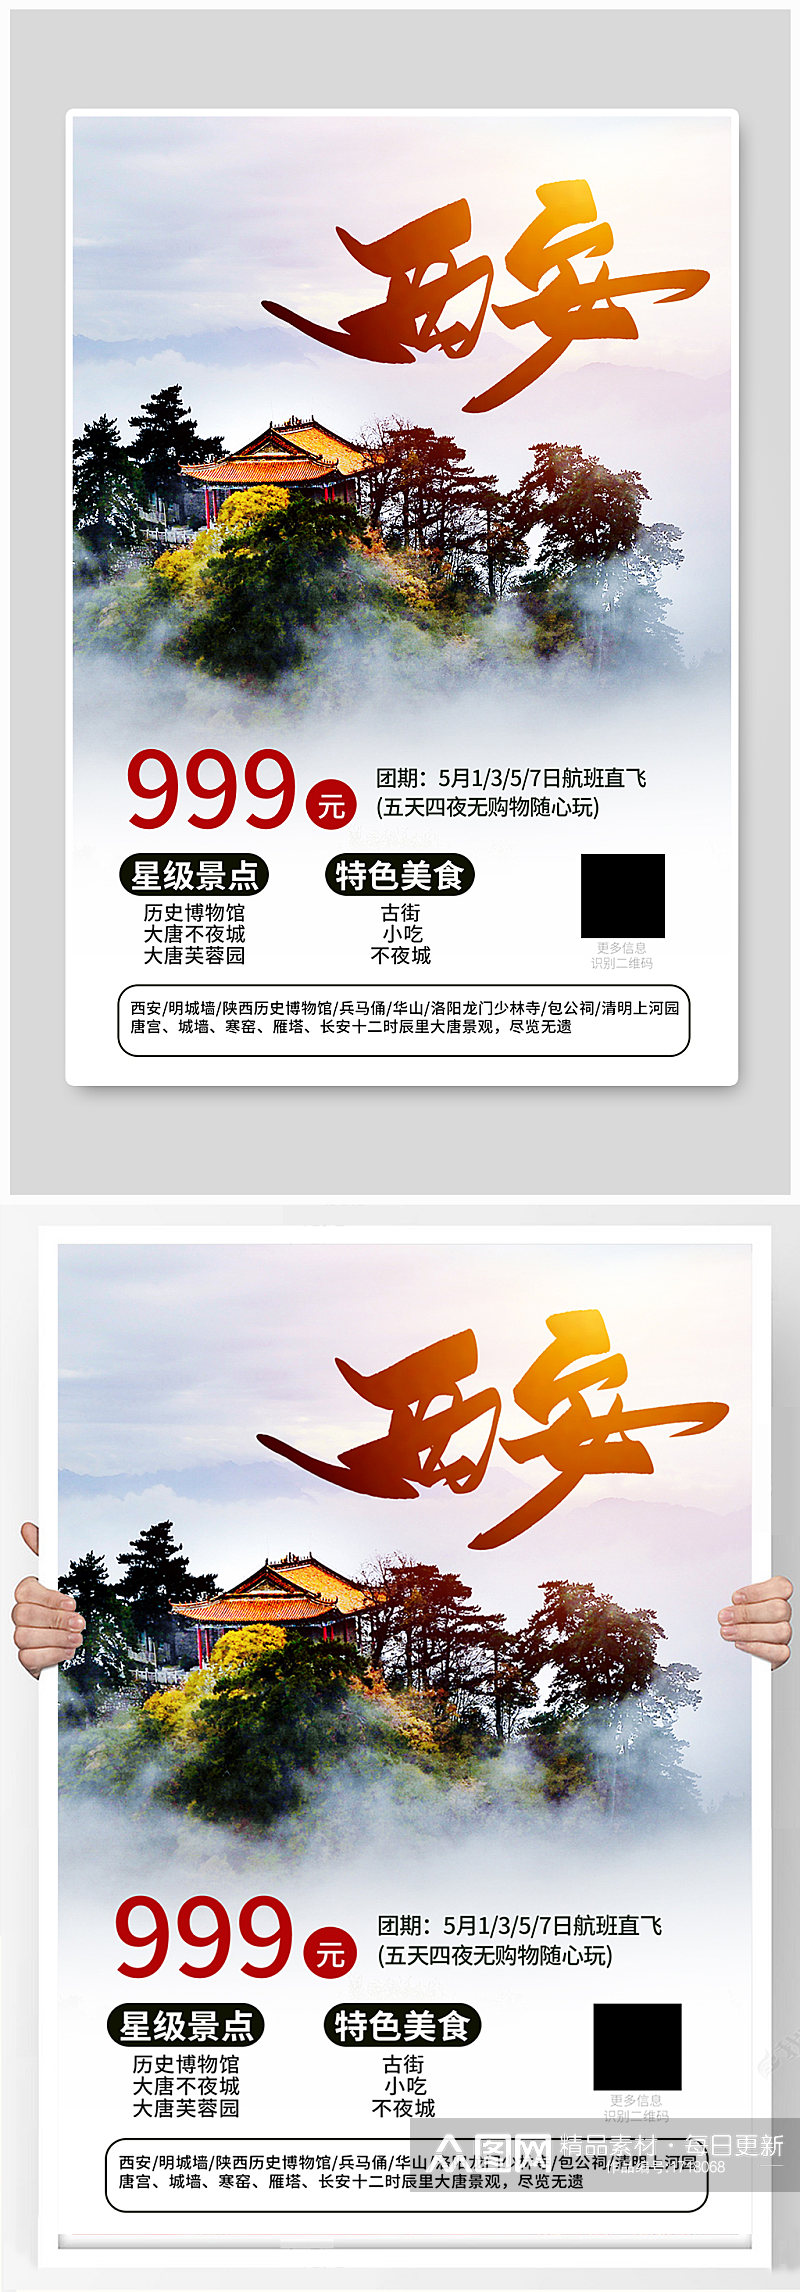 西安旅游促销宣传海报素材